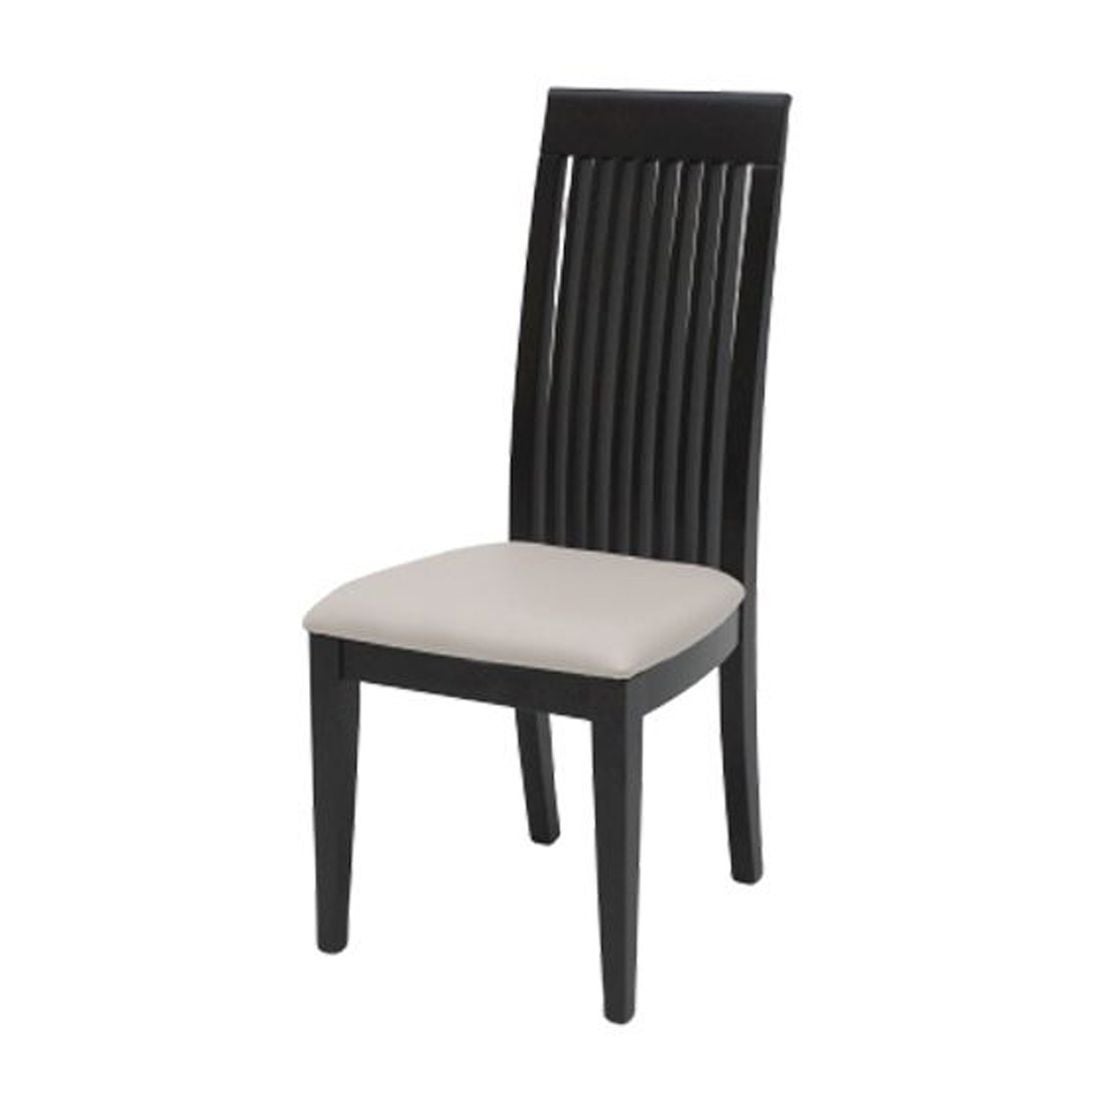 เก้าอี้ทานอาหาร เก้าอี้ไม้เบาะหนัง รุ่น Siko-SB Design Square